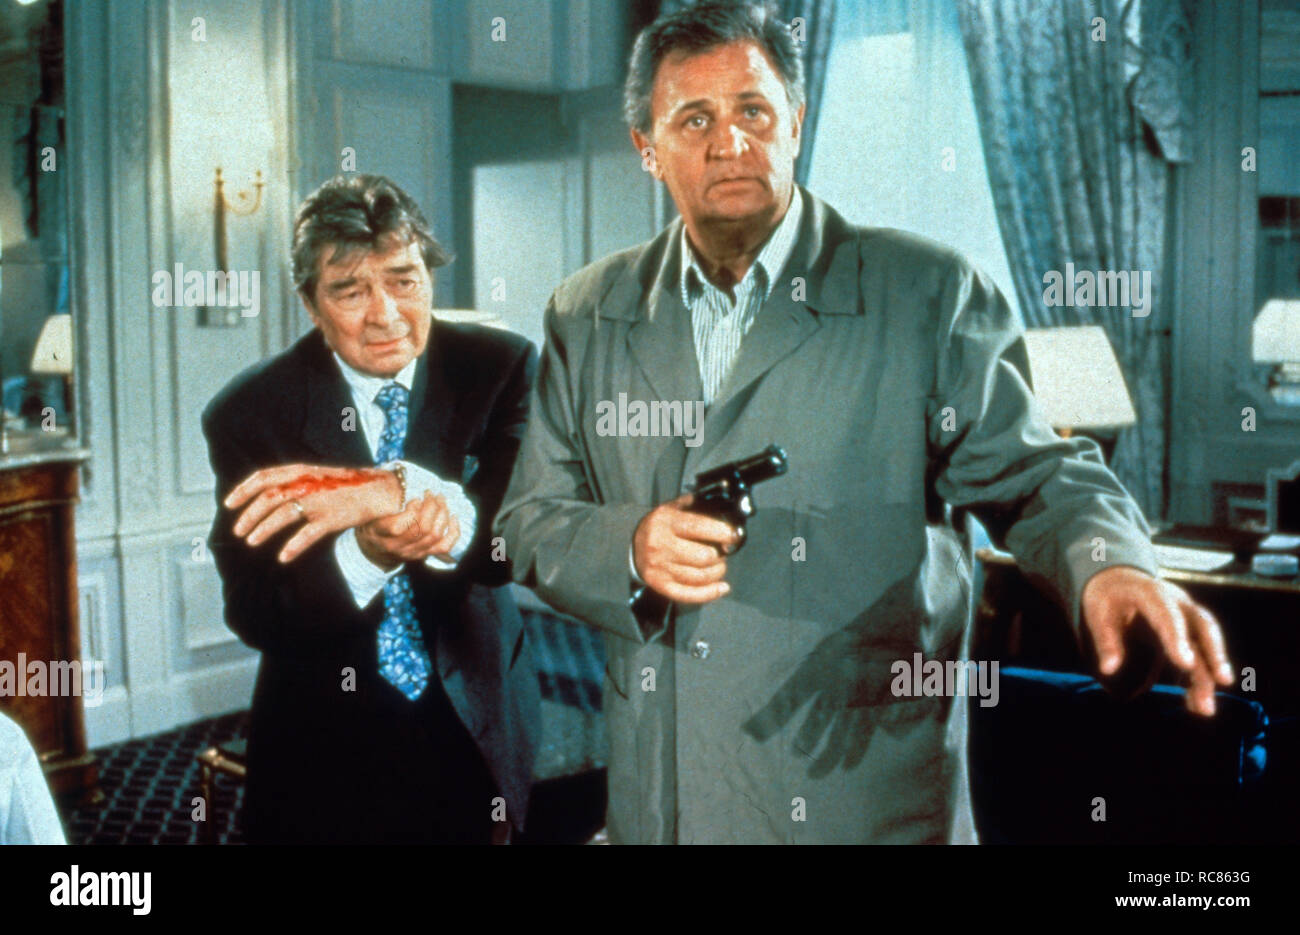 Navarro, aka: Kommissar Navarro, Fernsehserie, Frankreich/Schweiz 1989 - 2006, Darsteller: Roger Hanin (rechts), Serge Sauvion Foto Stock